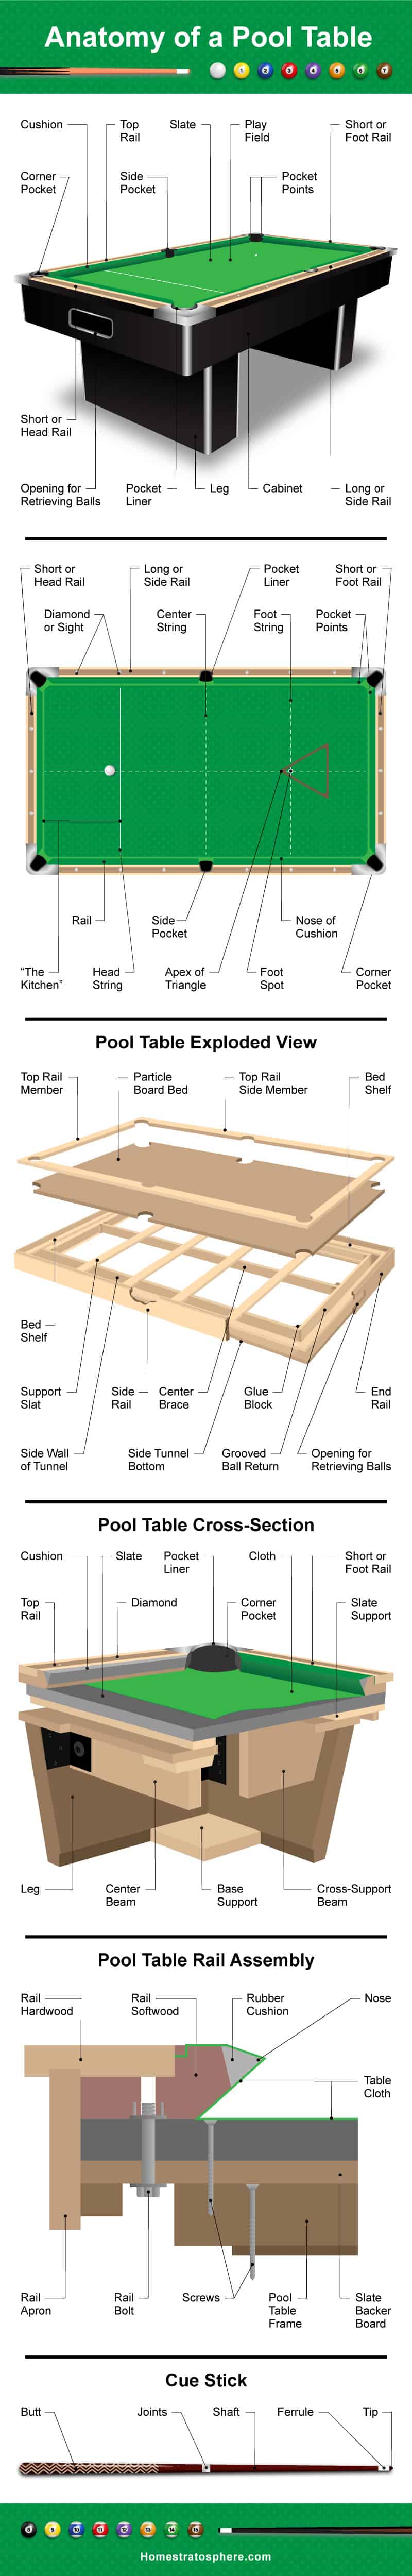 台球桌示意图，说明台球桌的结构，包括桌面、表面、横截面和球杆。